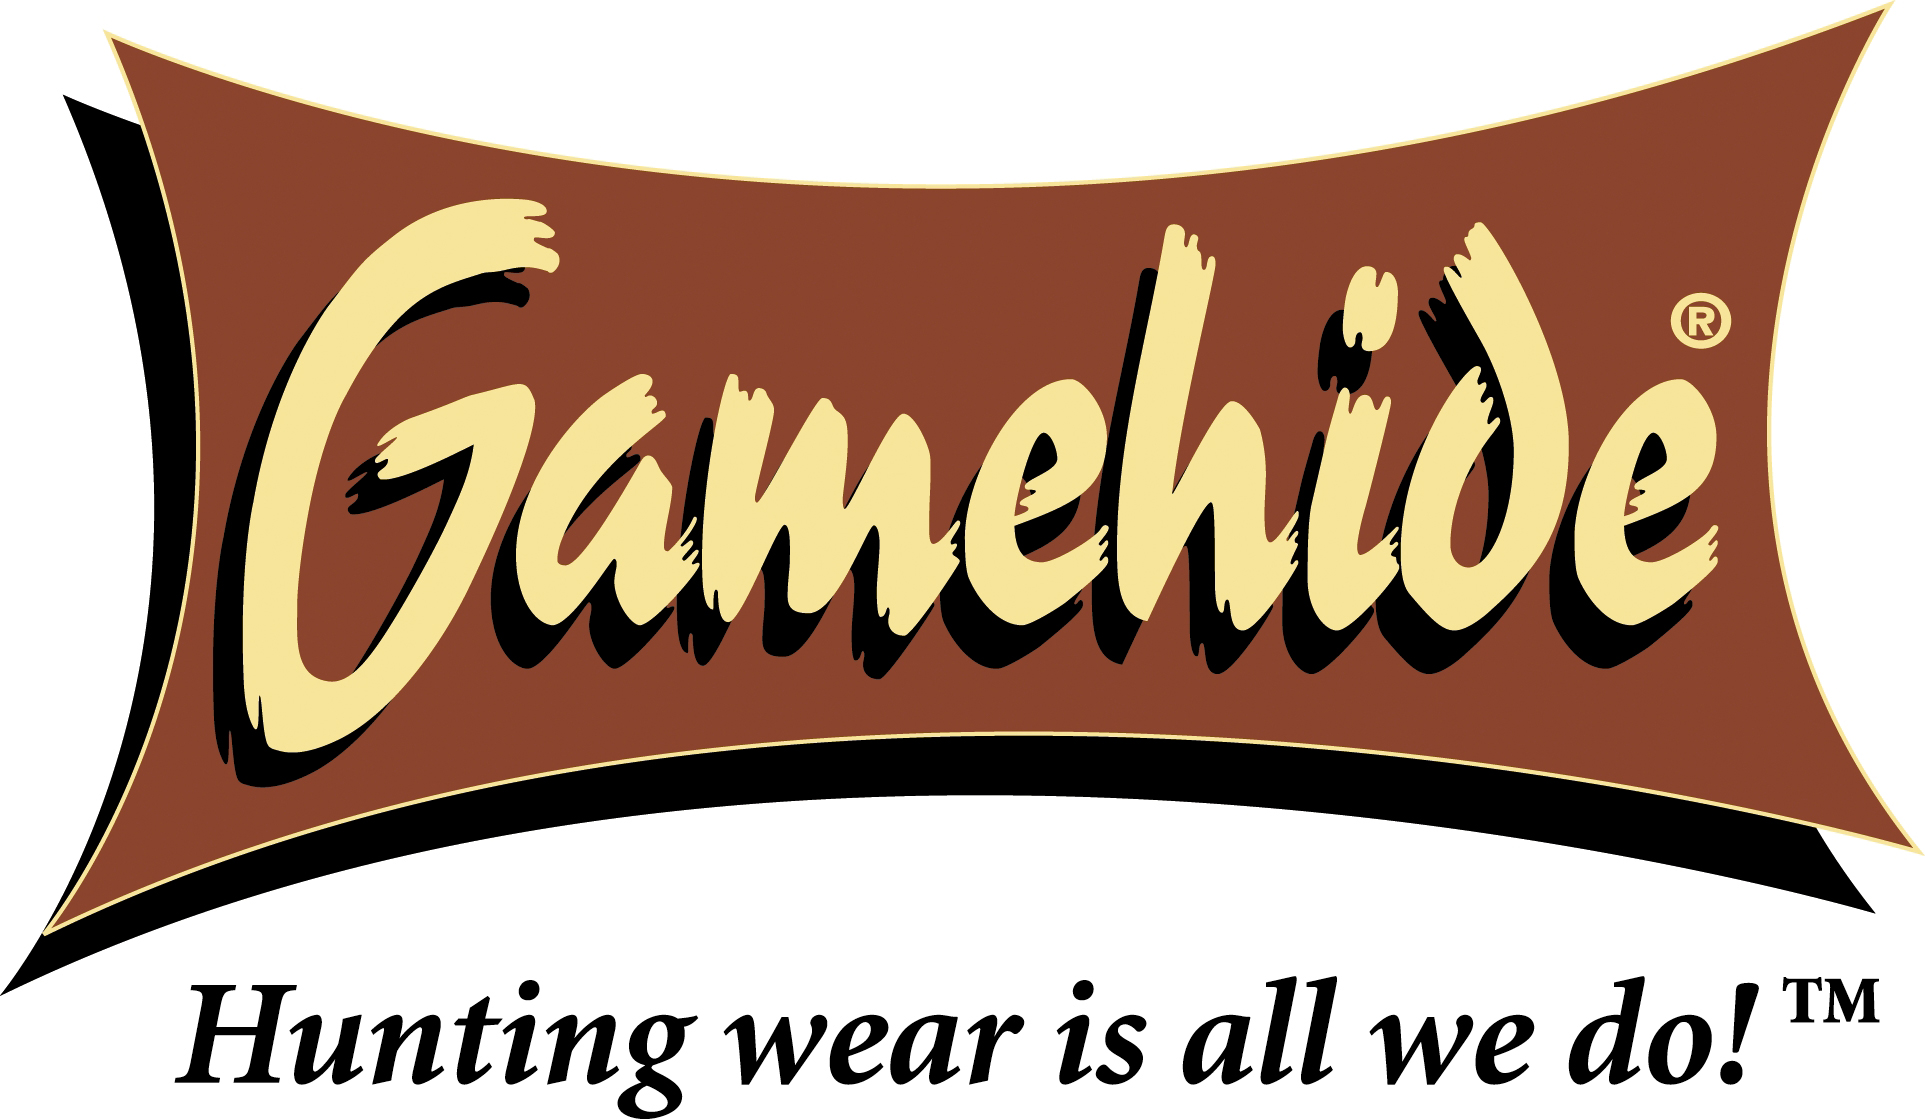 gamehide logo hr